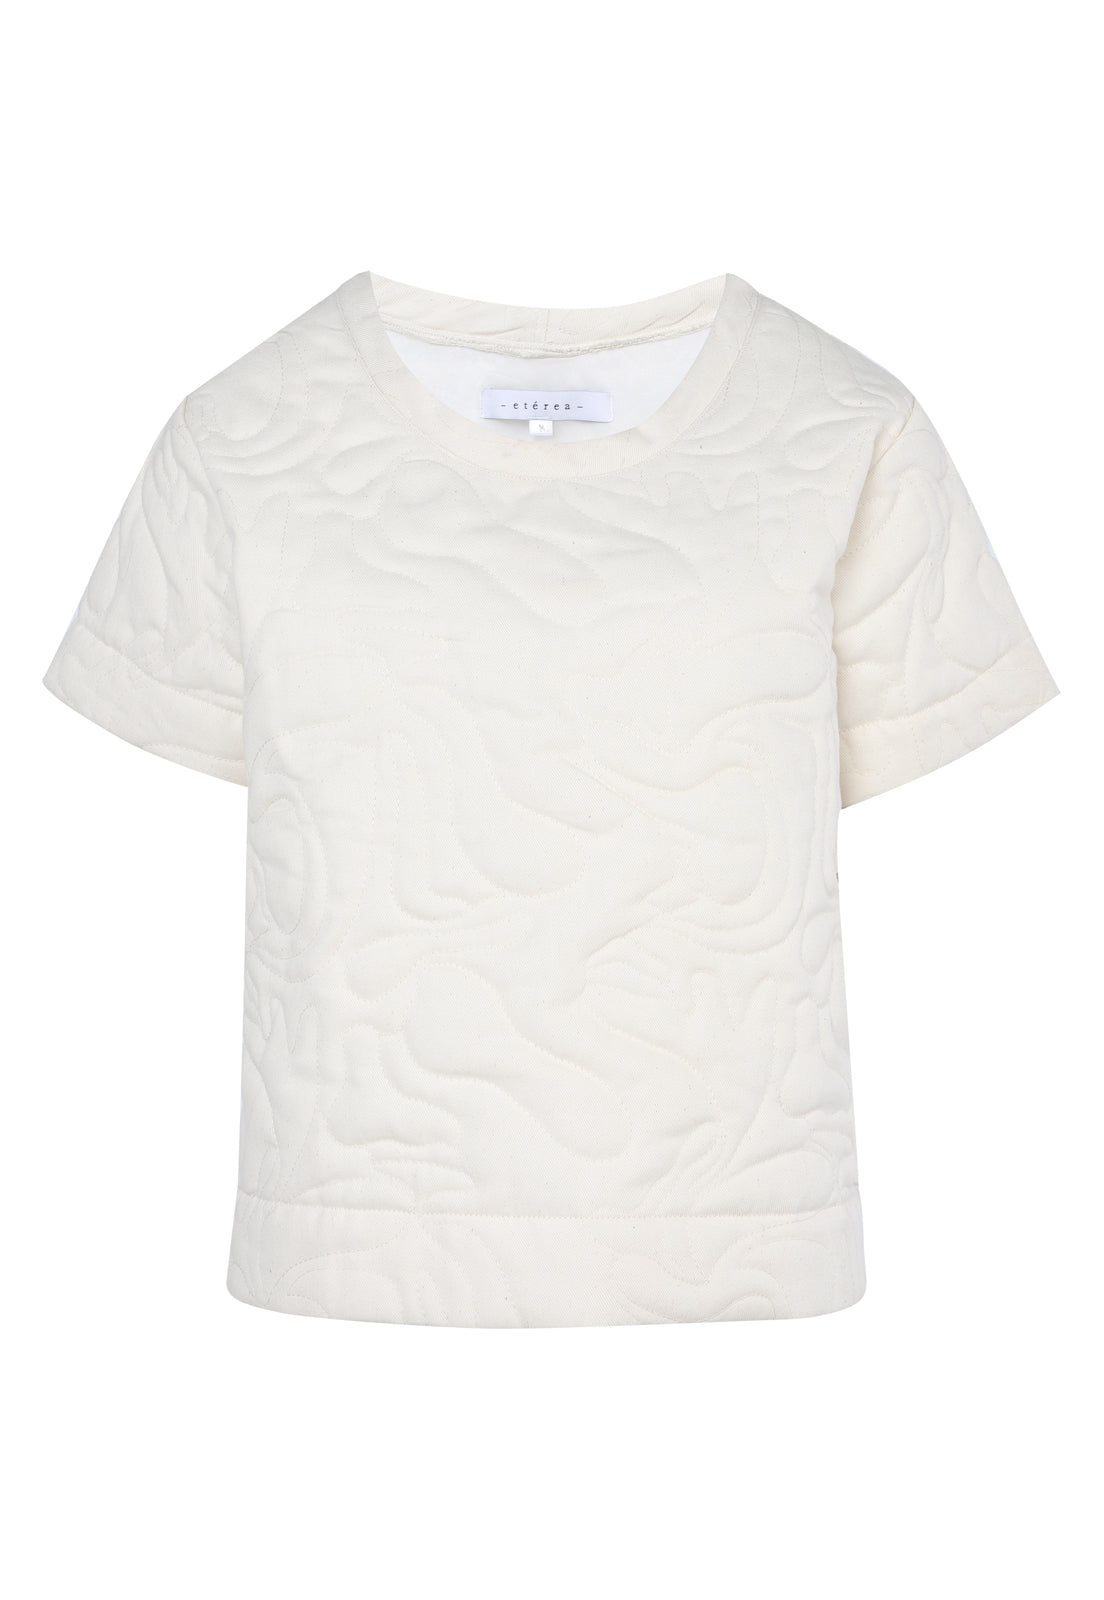 Claude T-Shirt Cream